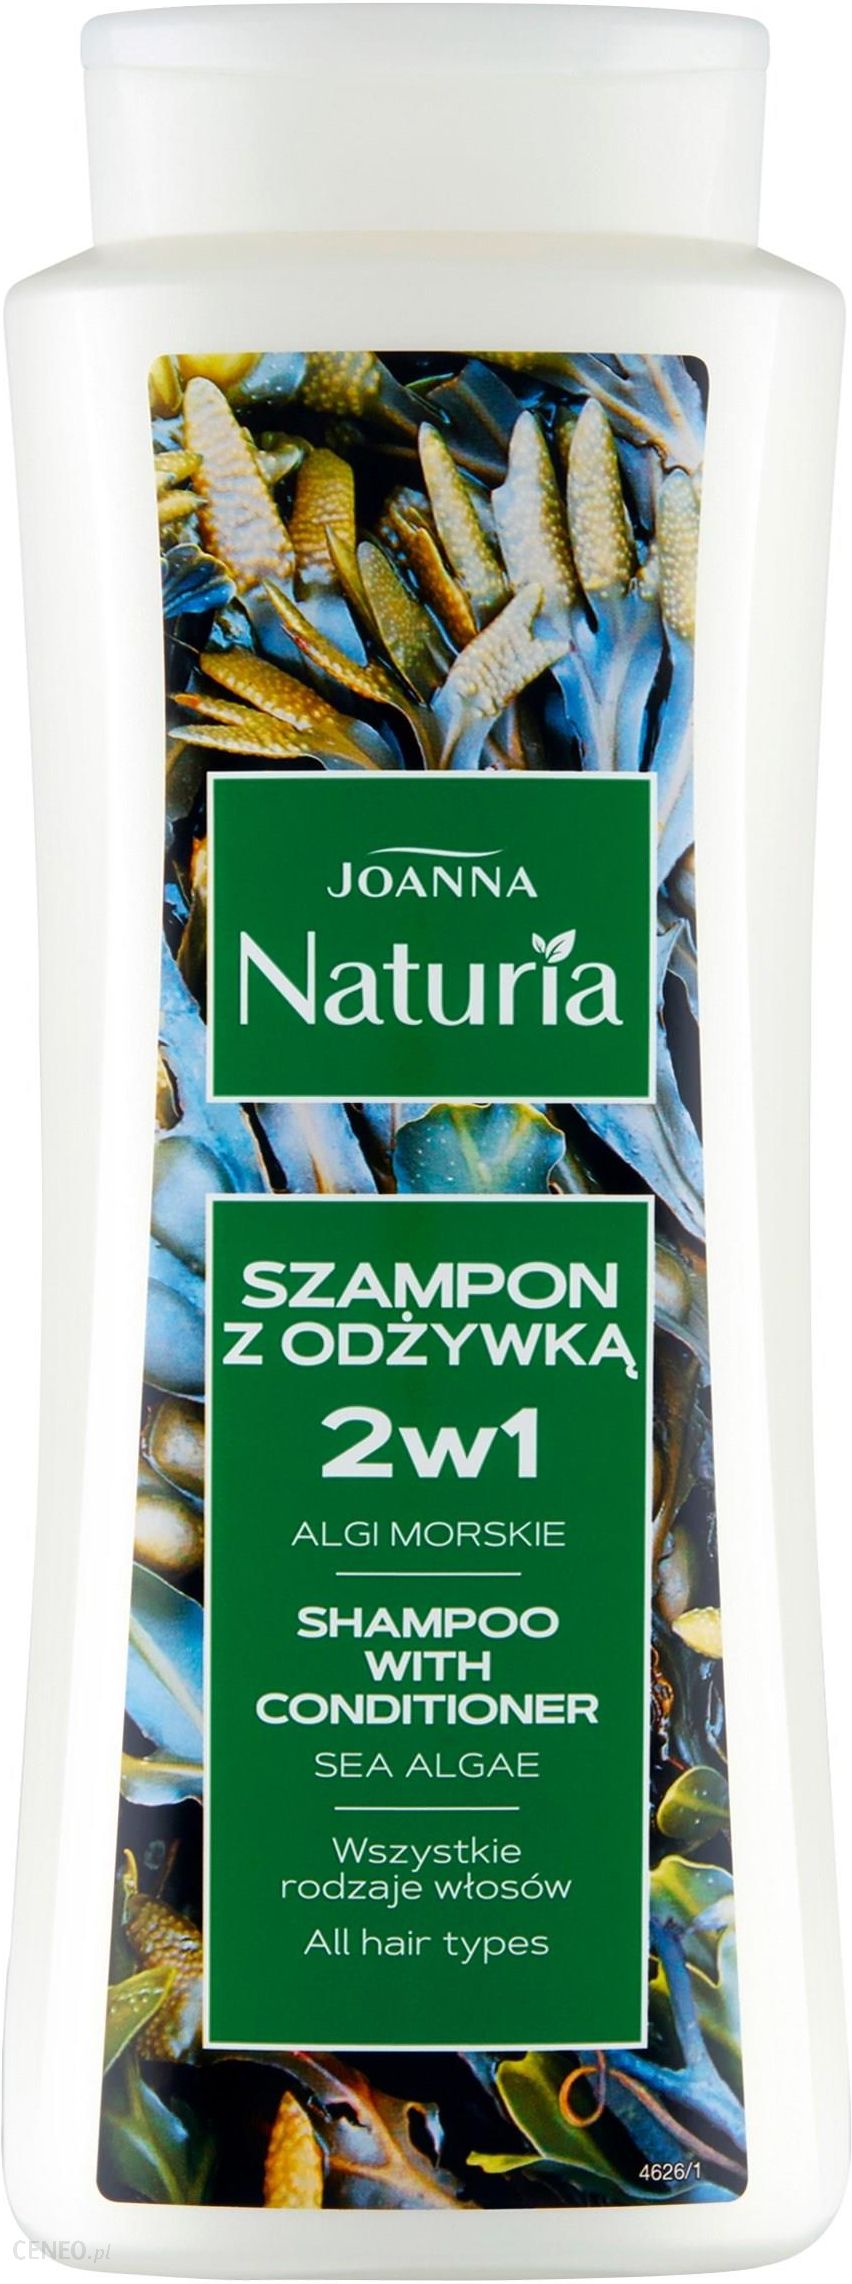 szampon z odżywką 2w1 joanna